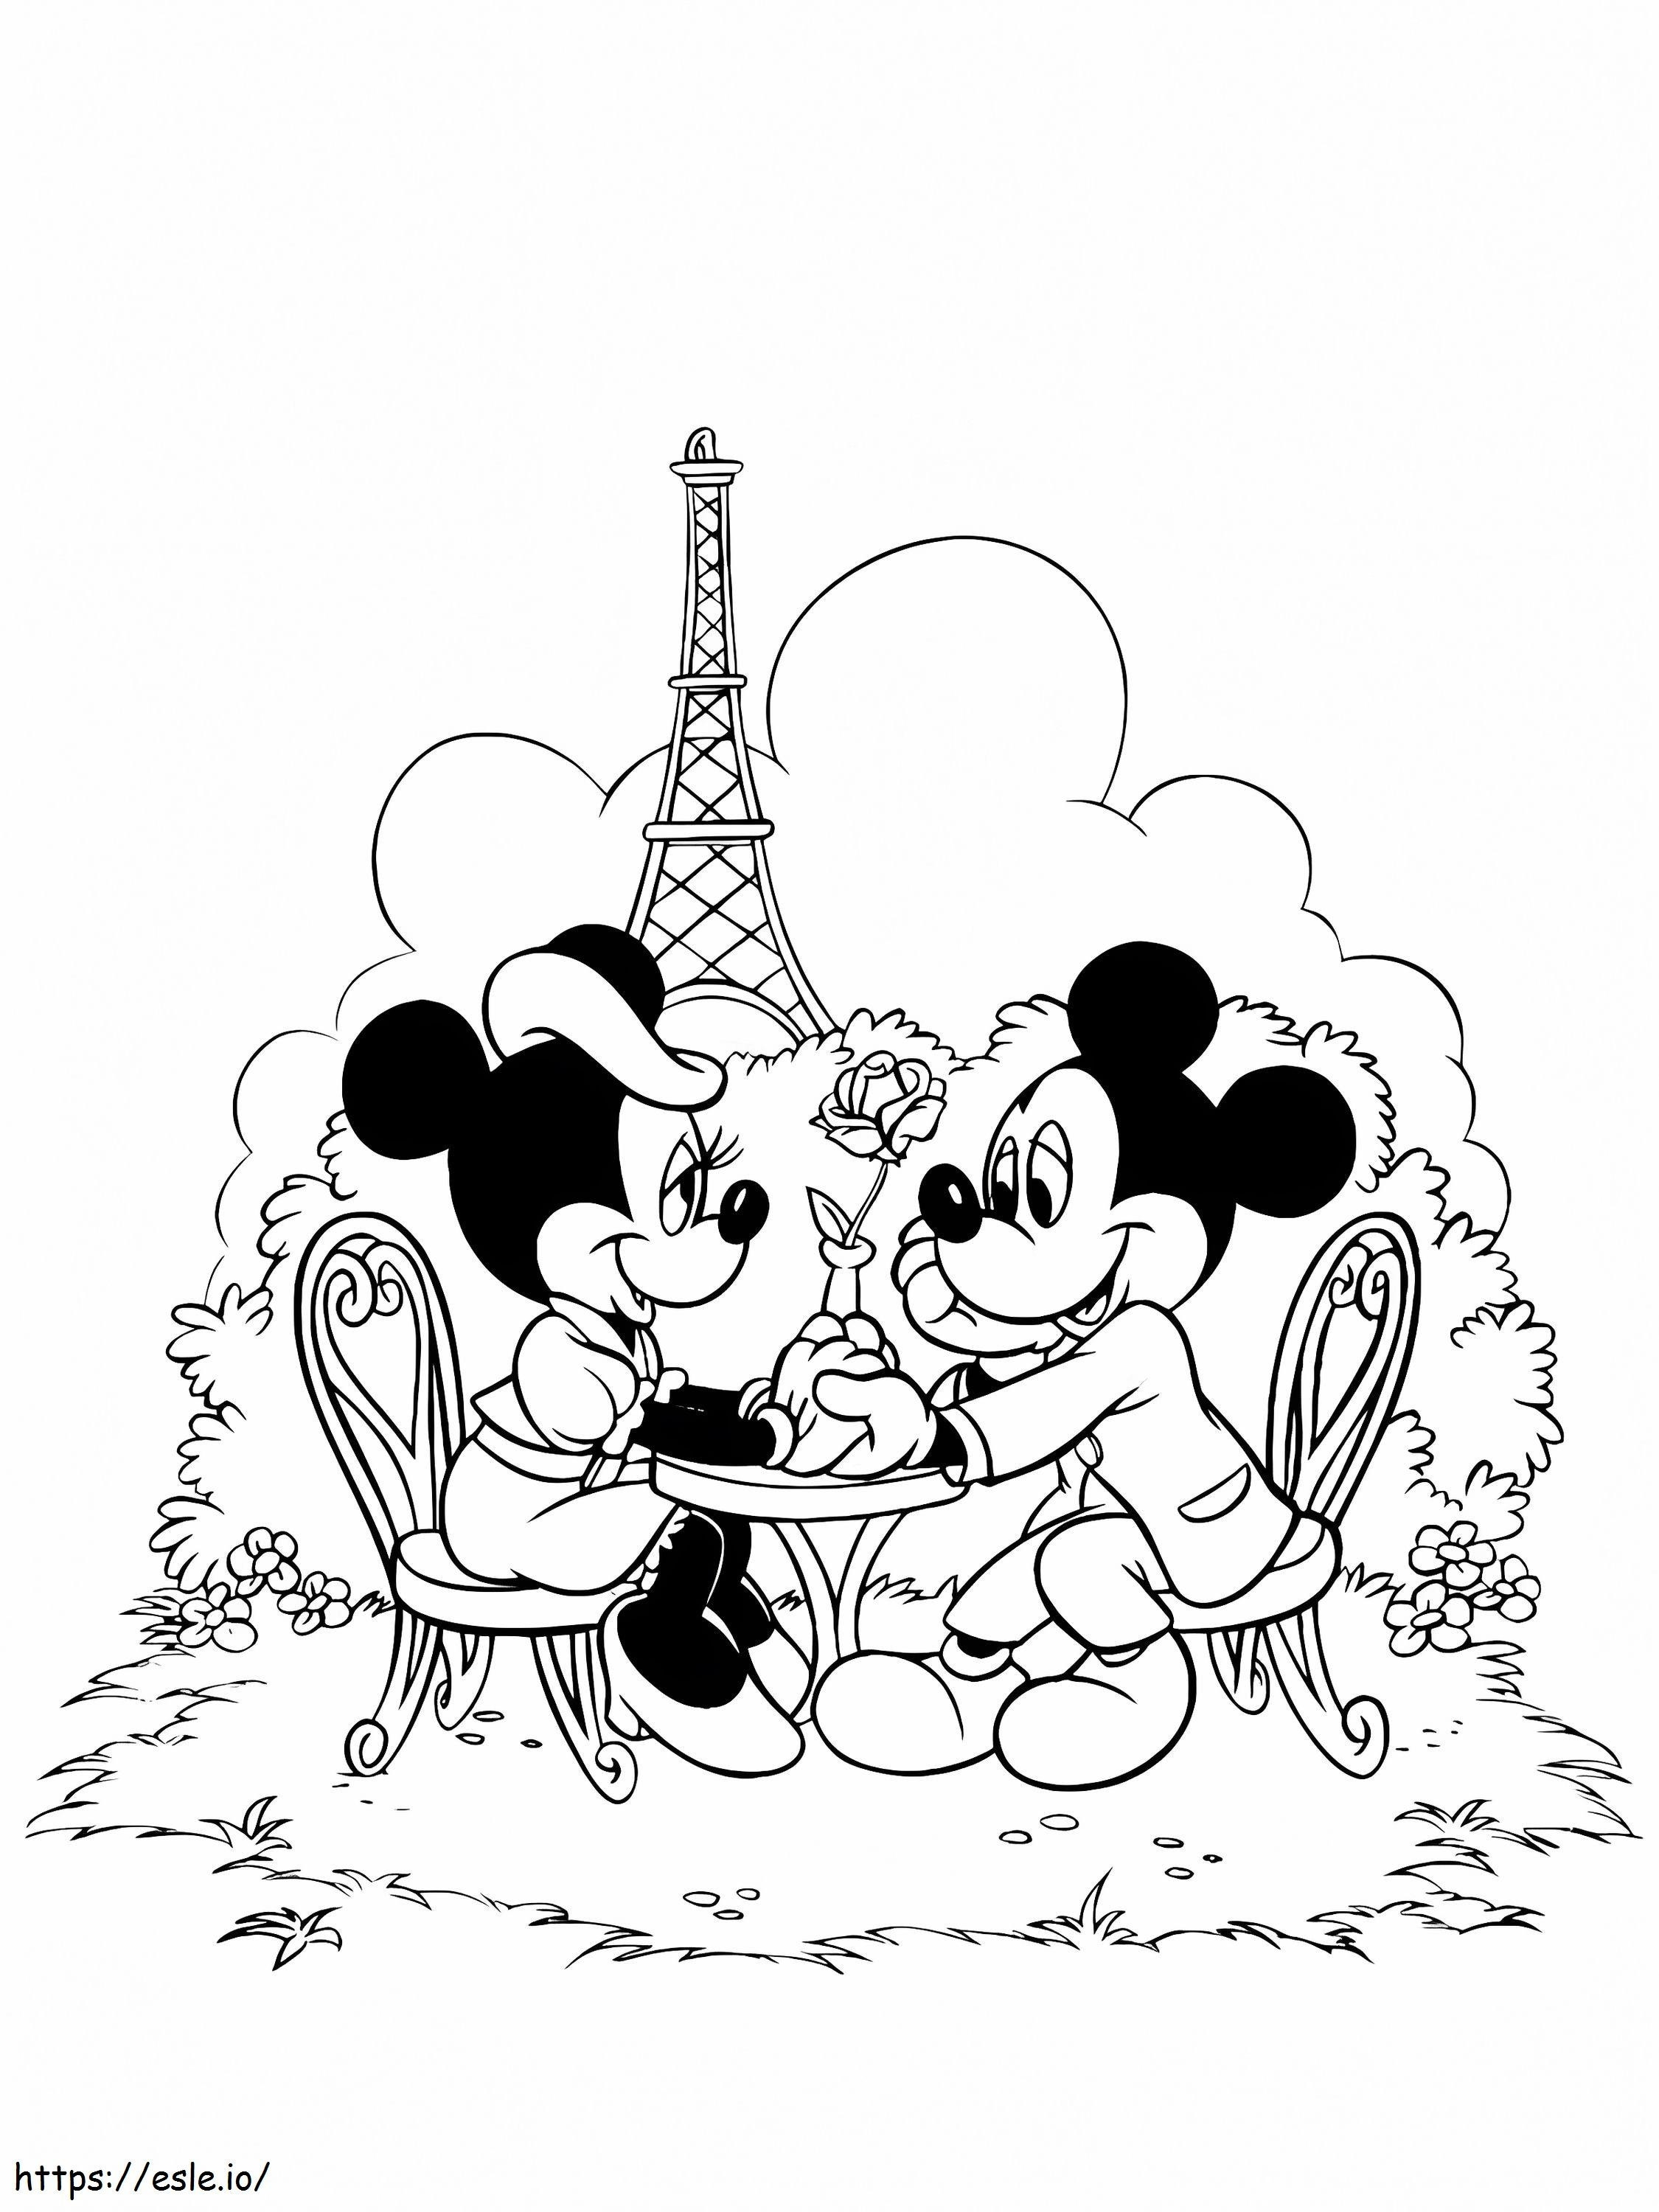 Topolino e Minnie nella città di Parigi da colorare